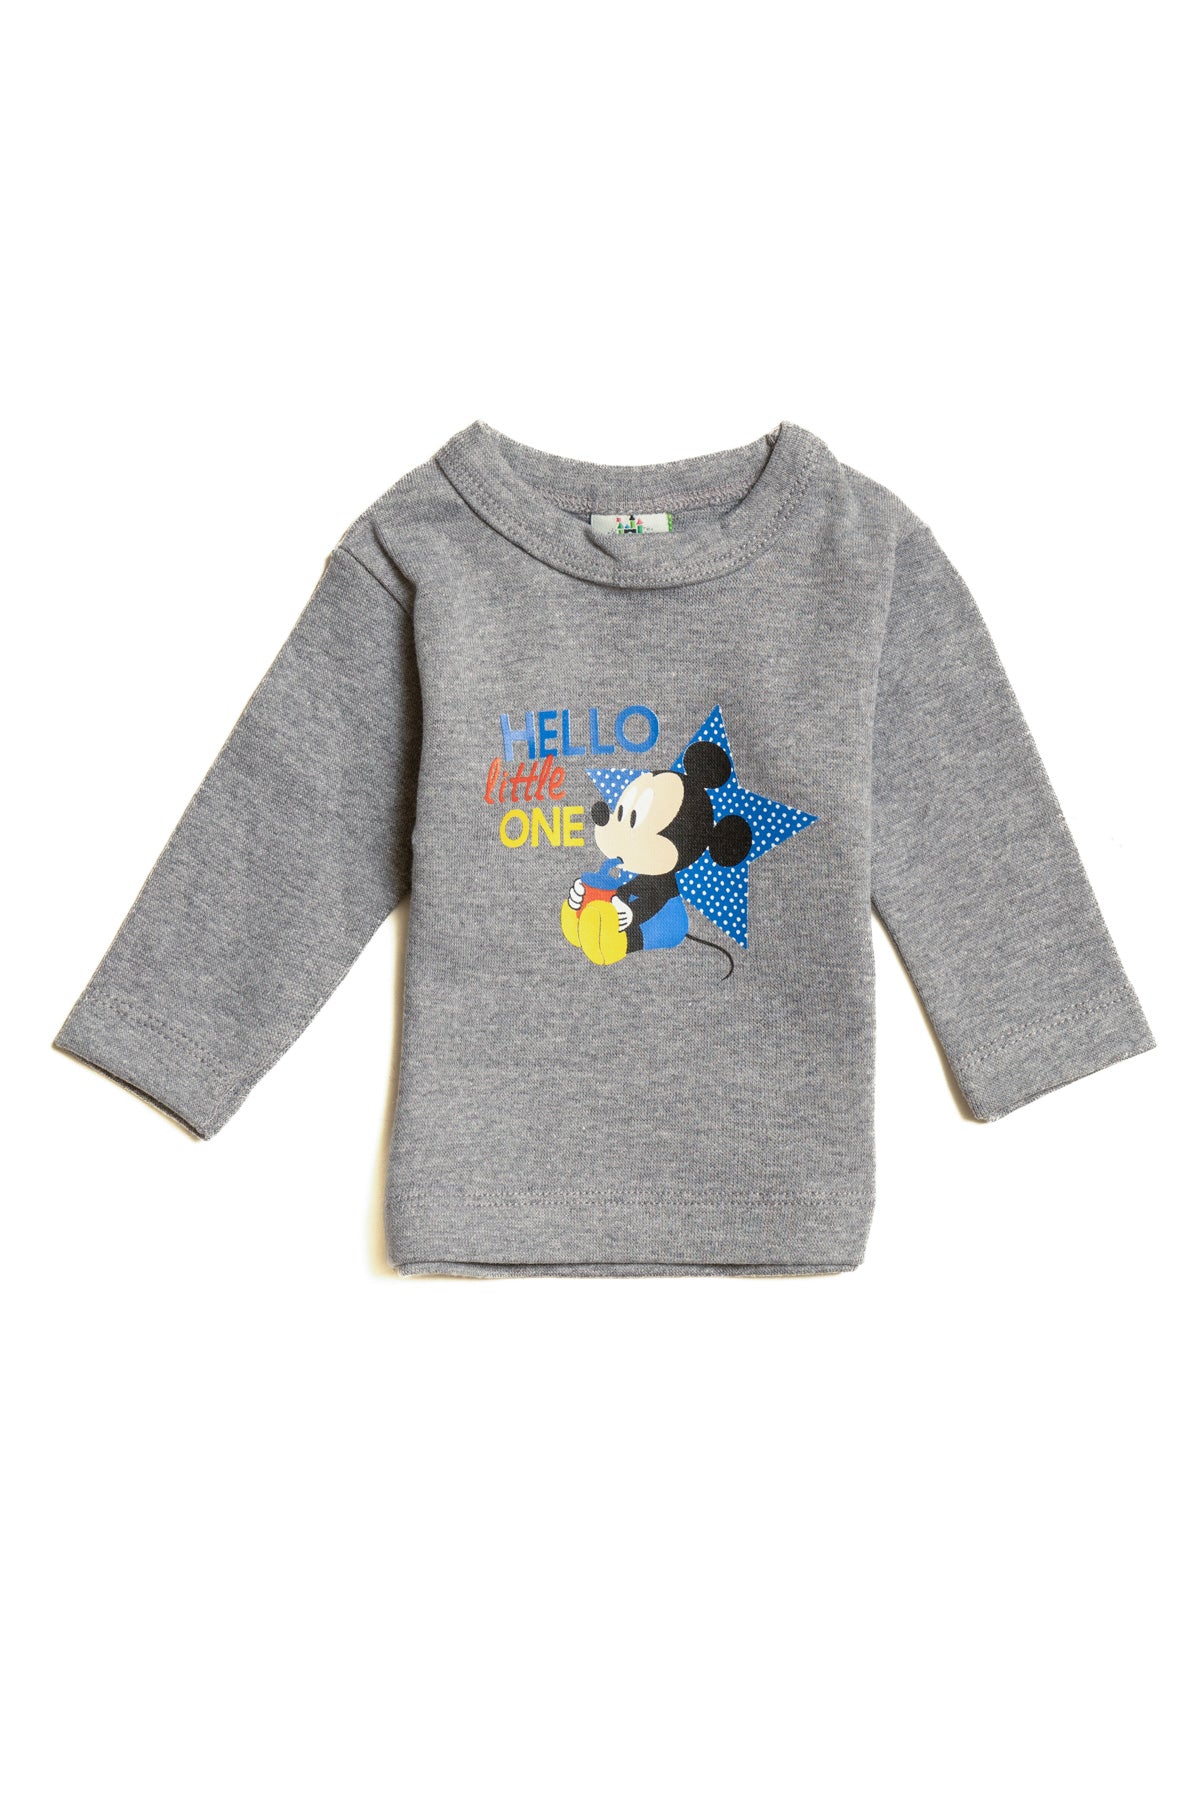 T-Shirt Baby Mickey " Hello " sleeve 4058